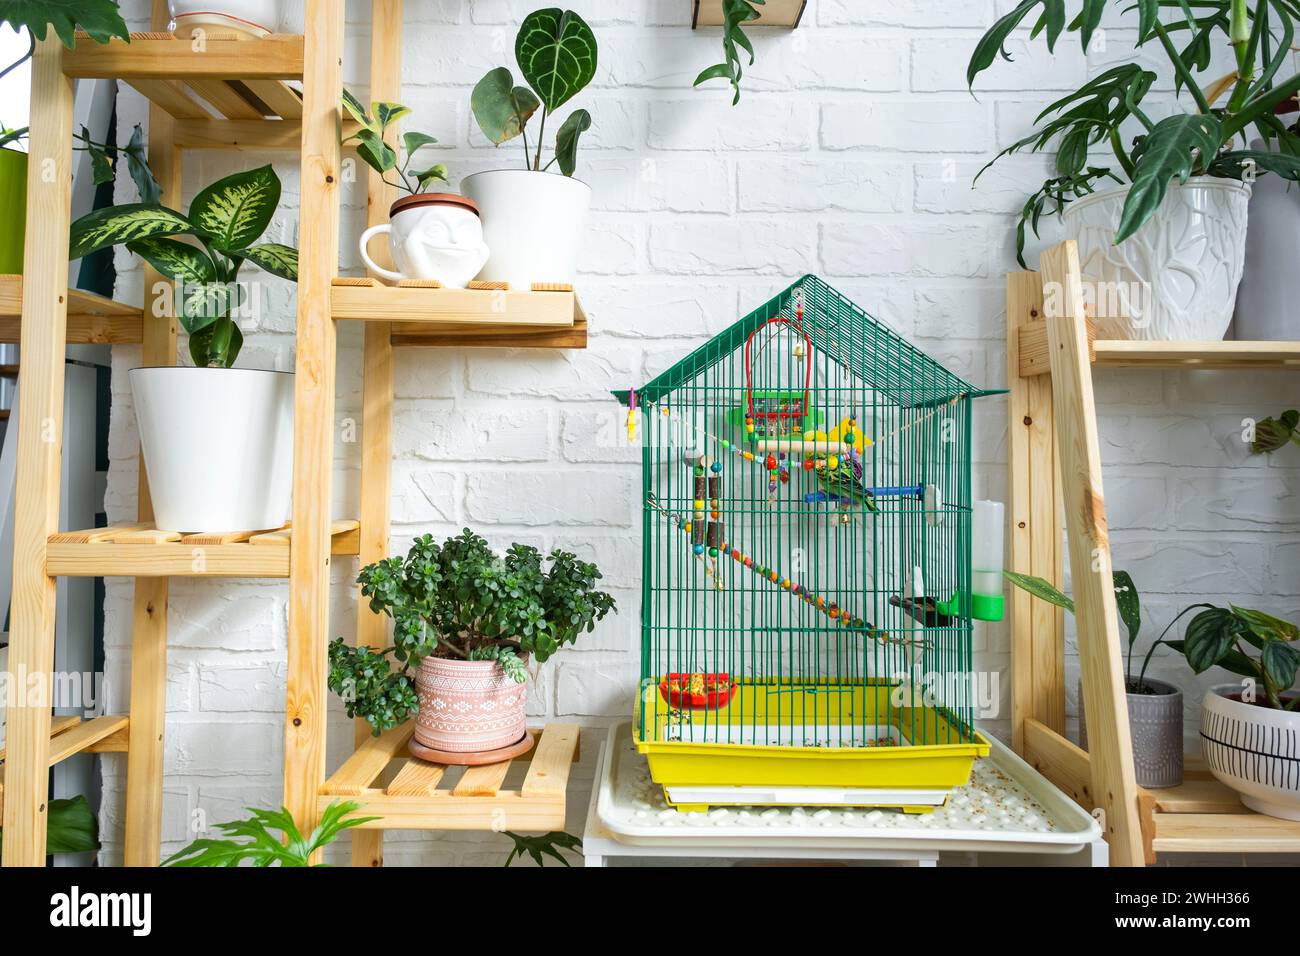 Ein Käfig mit einem Kumpel steht in einer Wohnecke des Hauses zwischen Regalen mit einer Gruppe von Zimmerpflanzen im Inneren. Haus Stockfoto